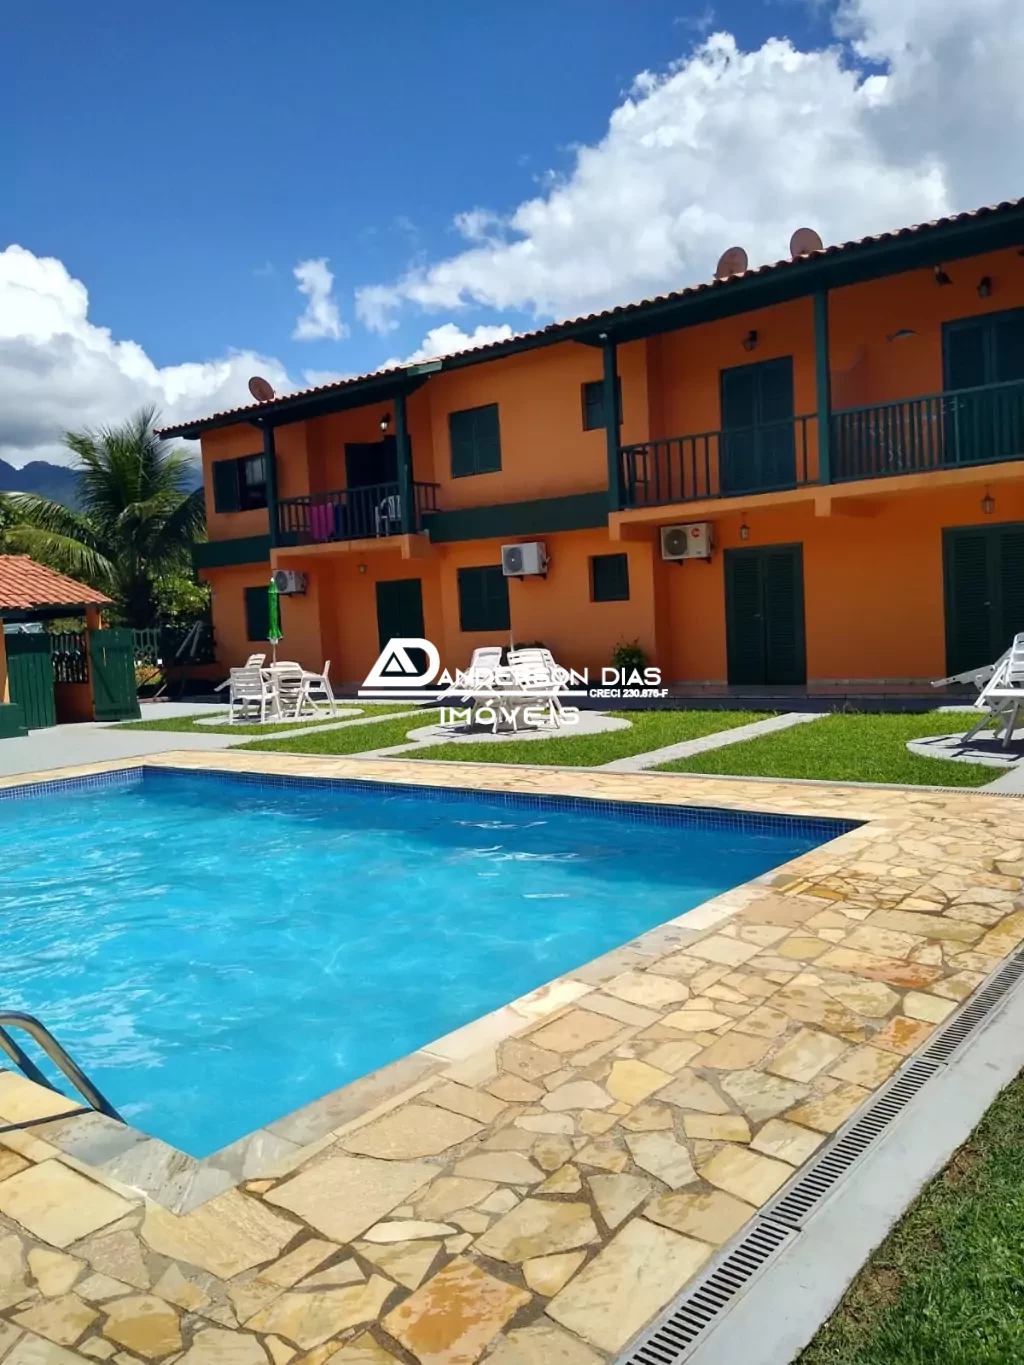 Apartamento em Condomínio com 2 Dormitórios com 57,00m² à venda por R$ 280.000,00 - Maranduba - Ubatuba/SP